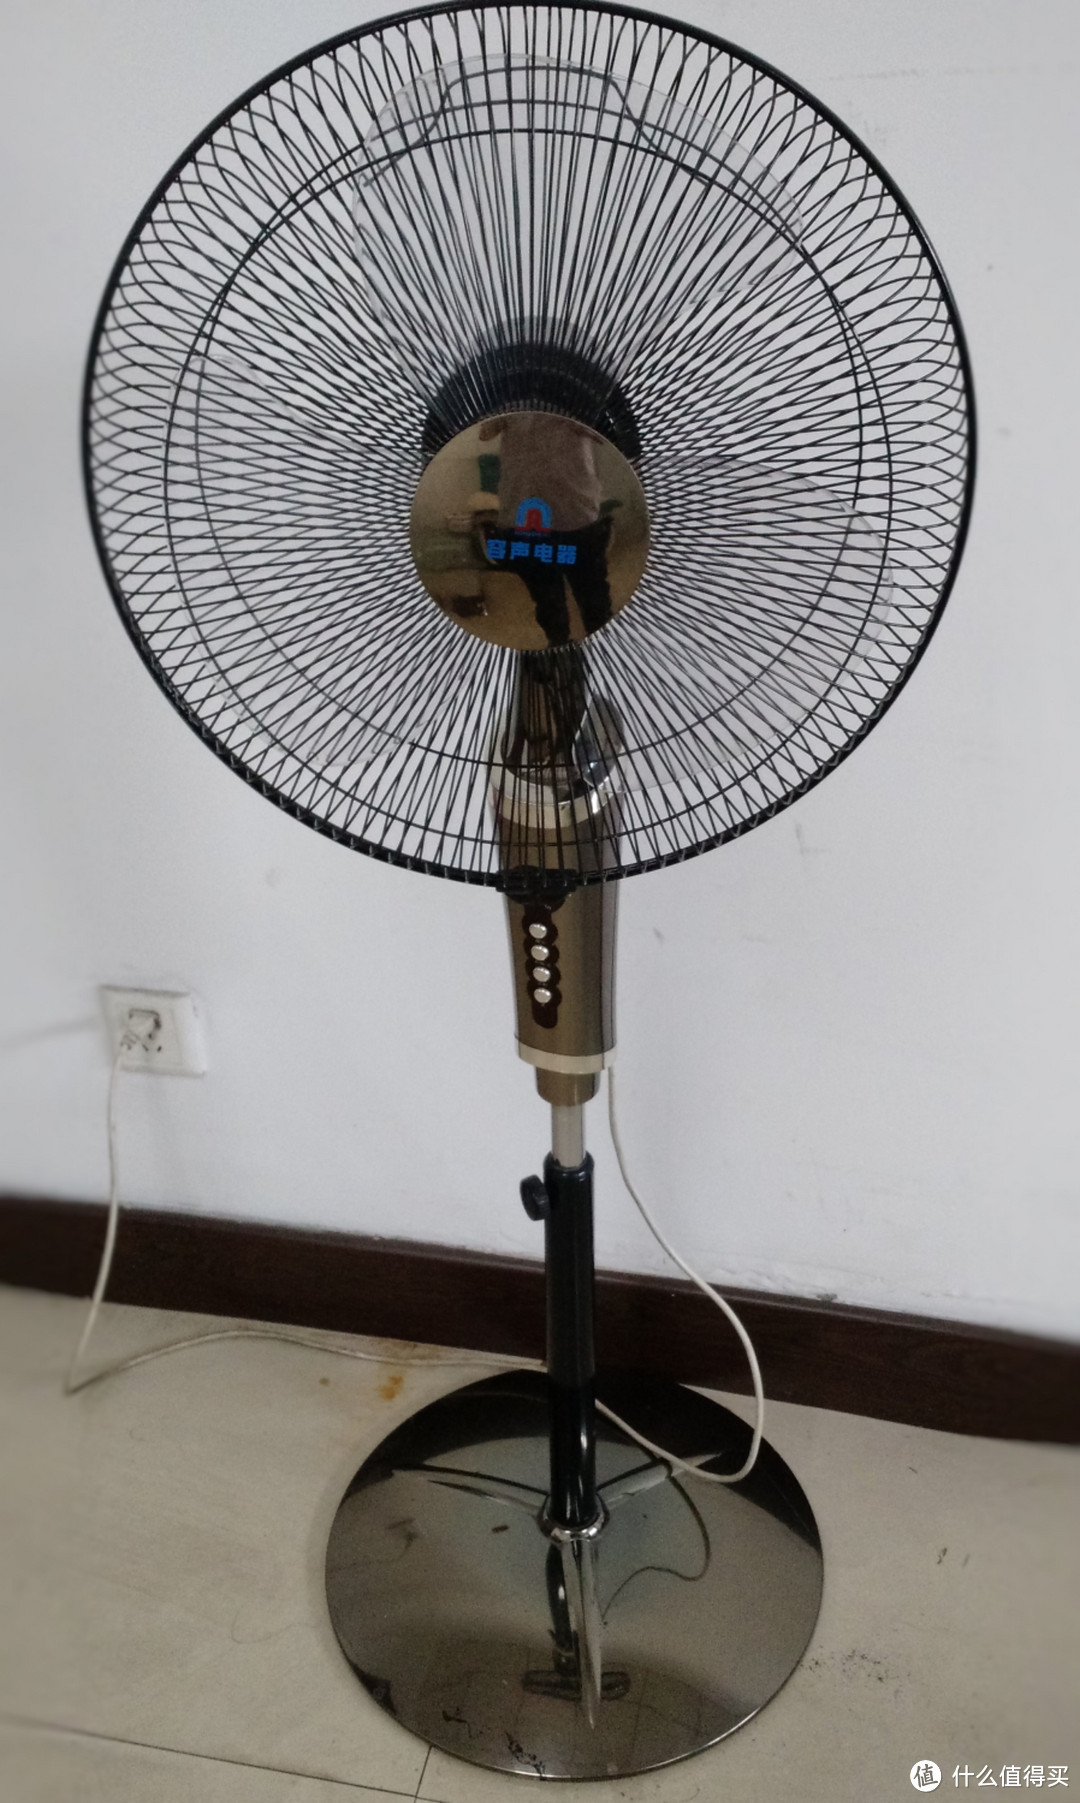 #一周热征#三伏天#这个盛夏不太冷：购买十年的Rongsheng 容声 电风扇再当主力